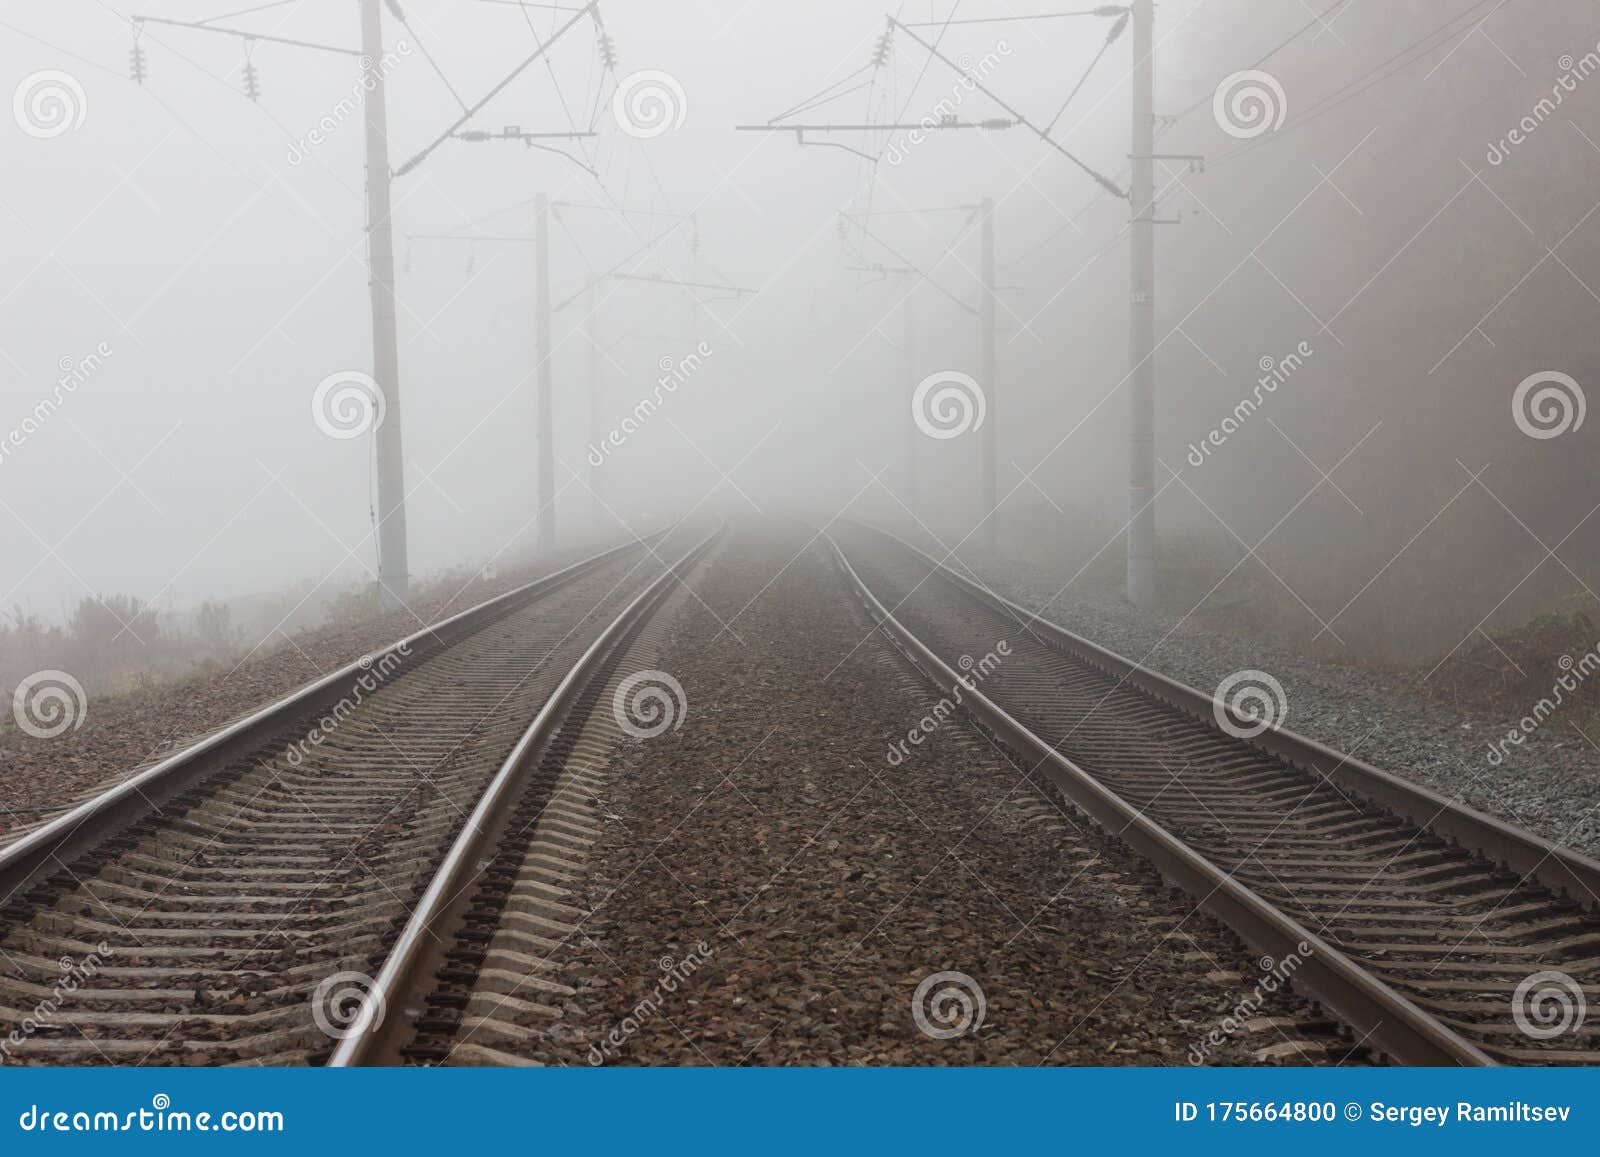 Zwei Parallele Spuren Der Eisenbahn, Stärker in Die Kluft in Nebel